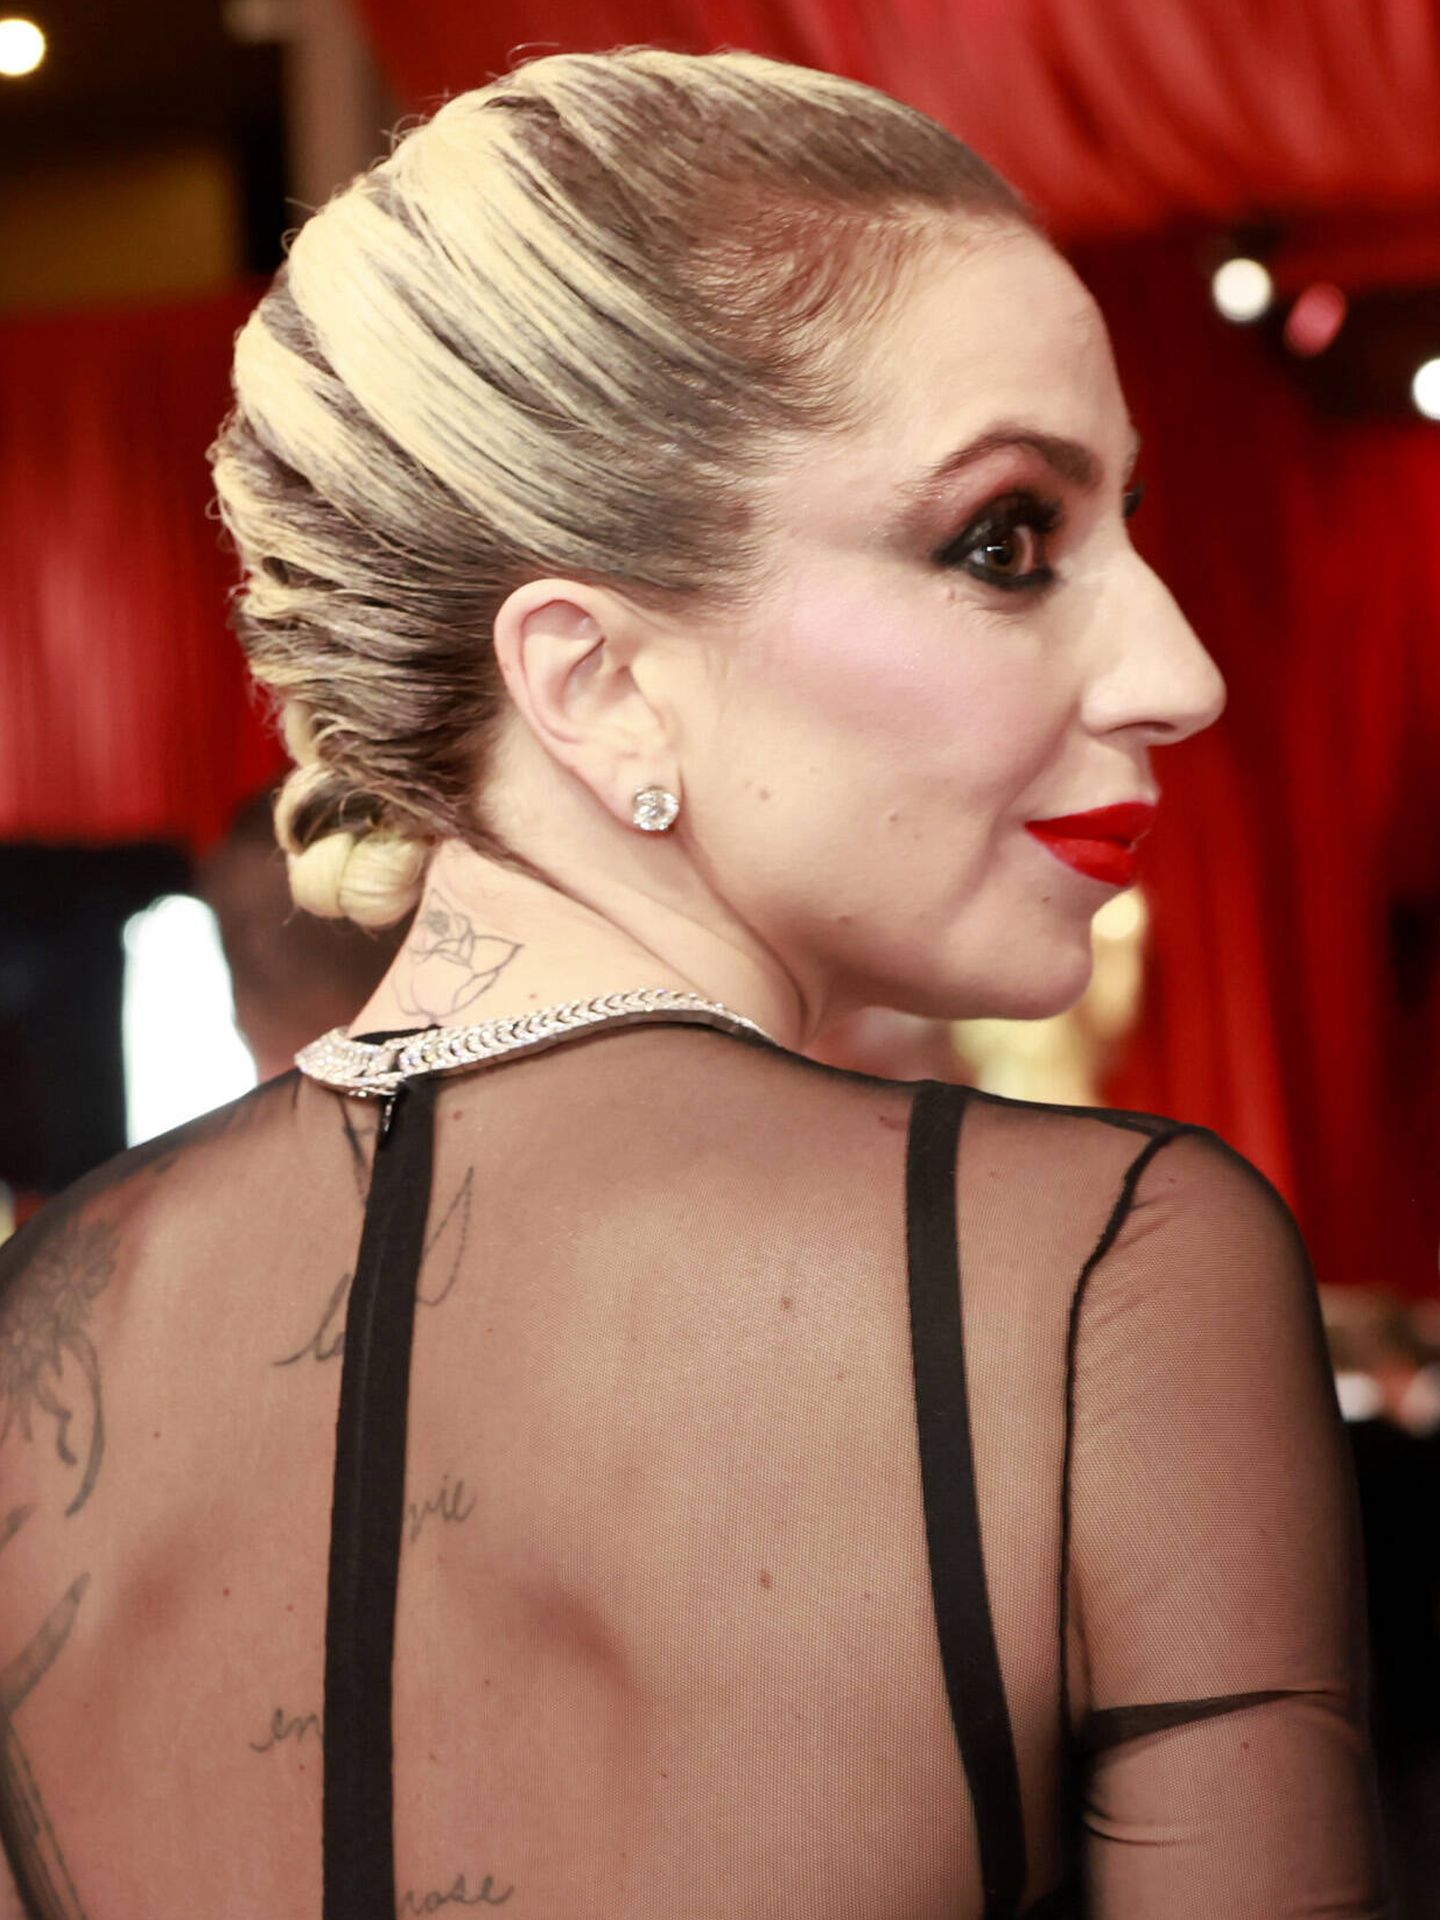 Detalle posterior del look de Lady Gaga. (Getty/Emma McIntyre)